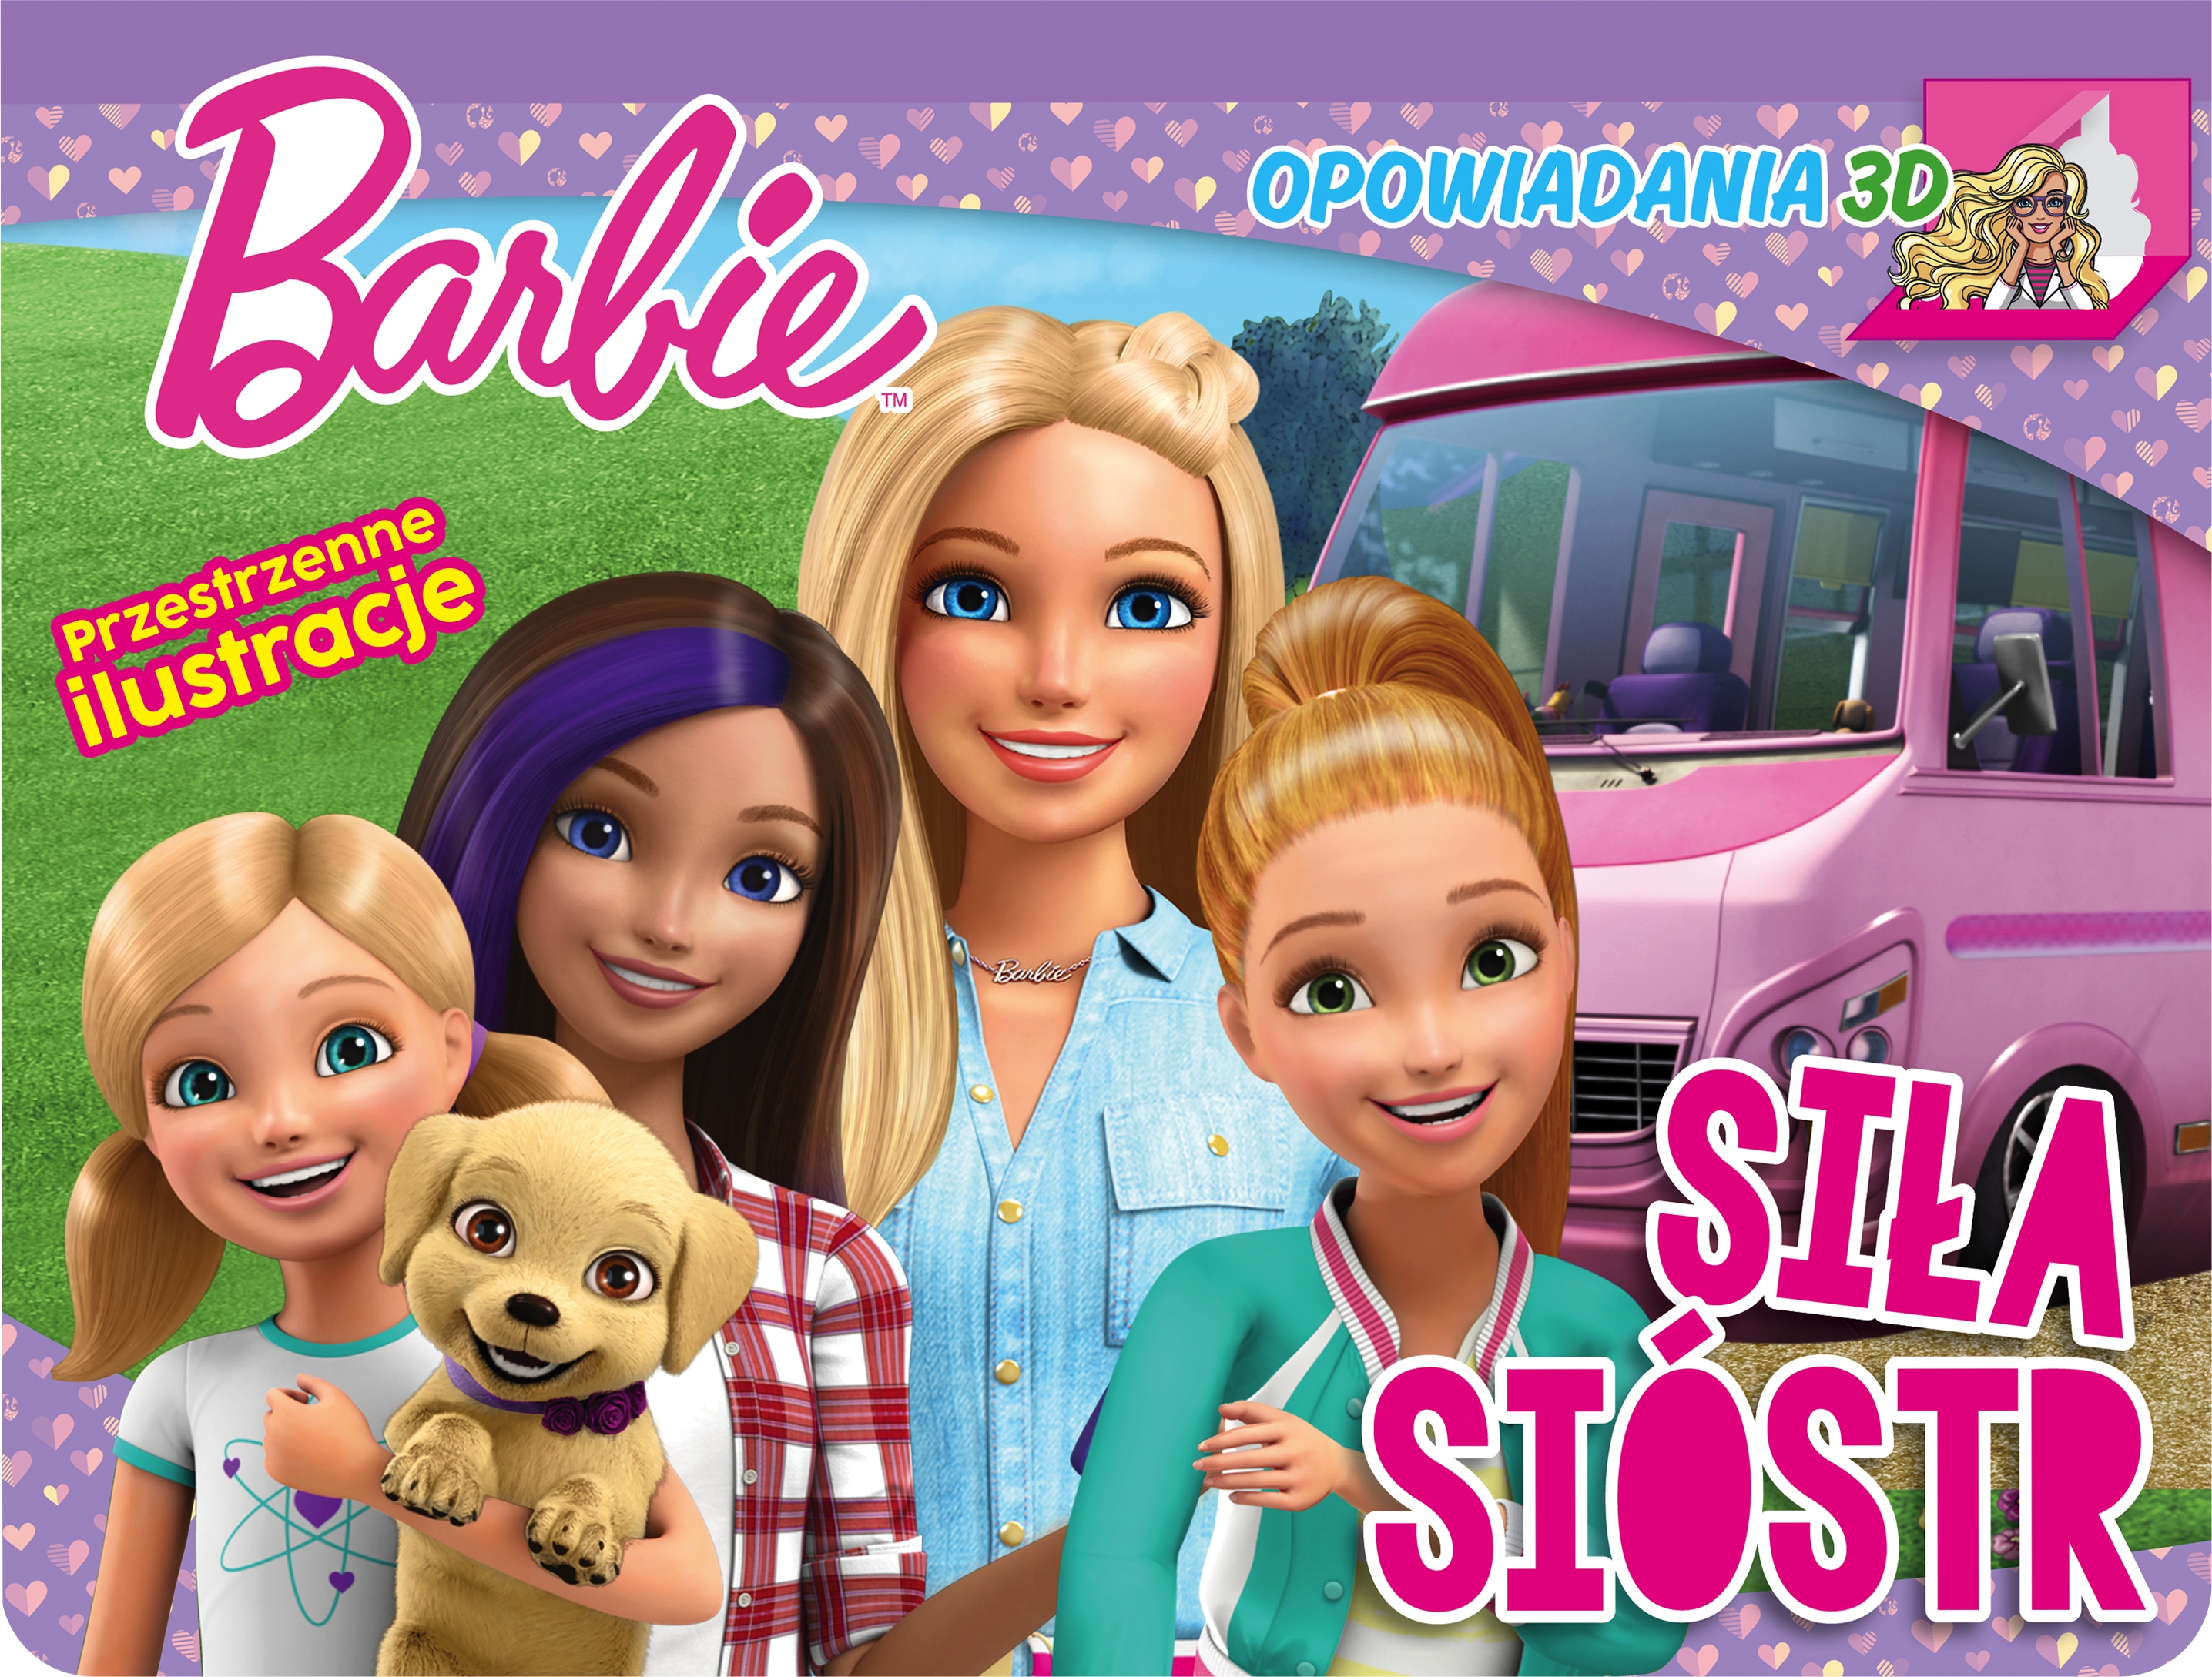 Barbie. Opowiadania 3D. Siła sióstr